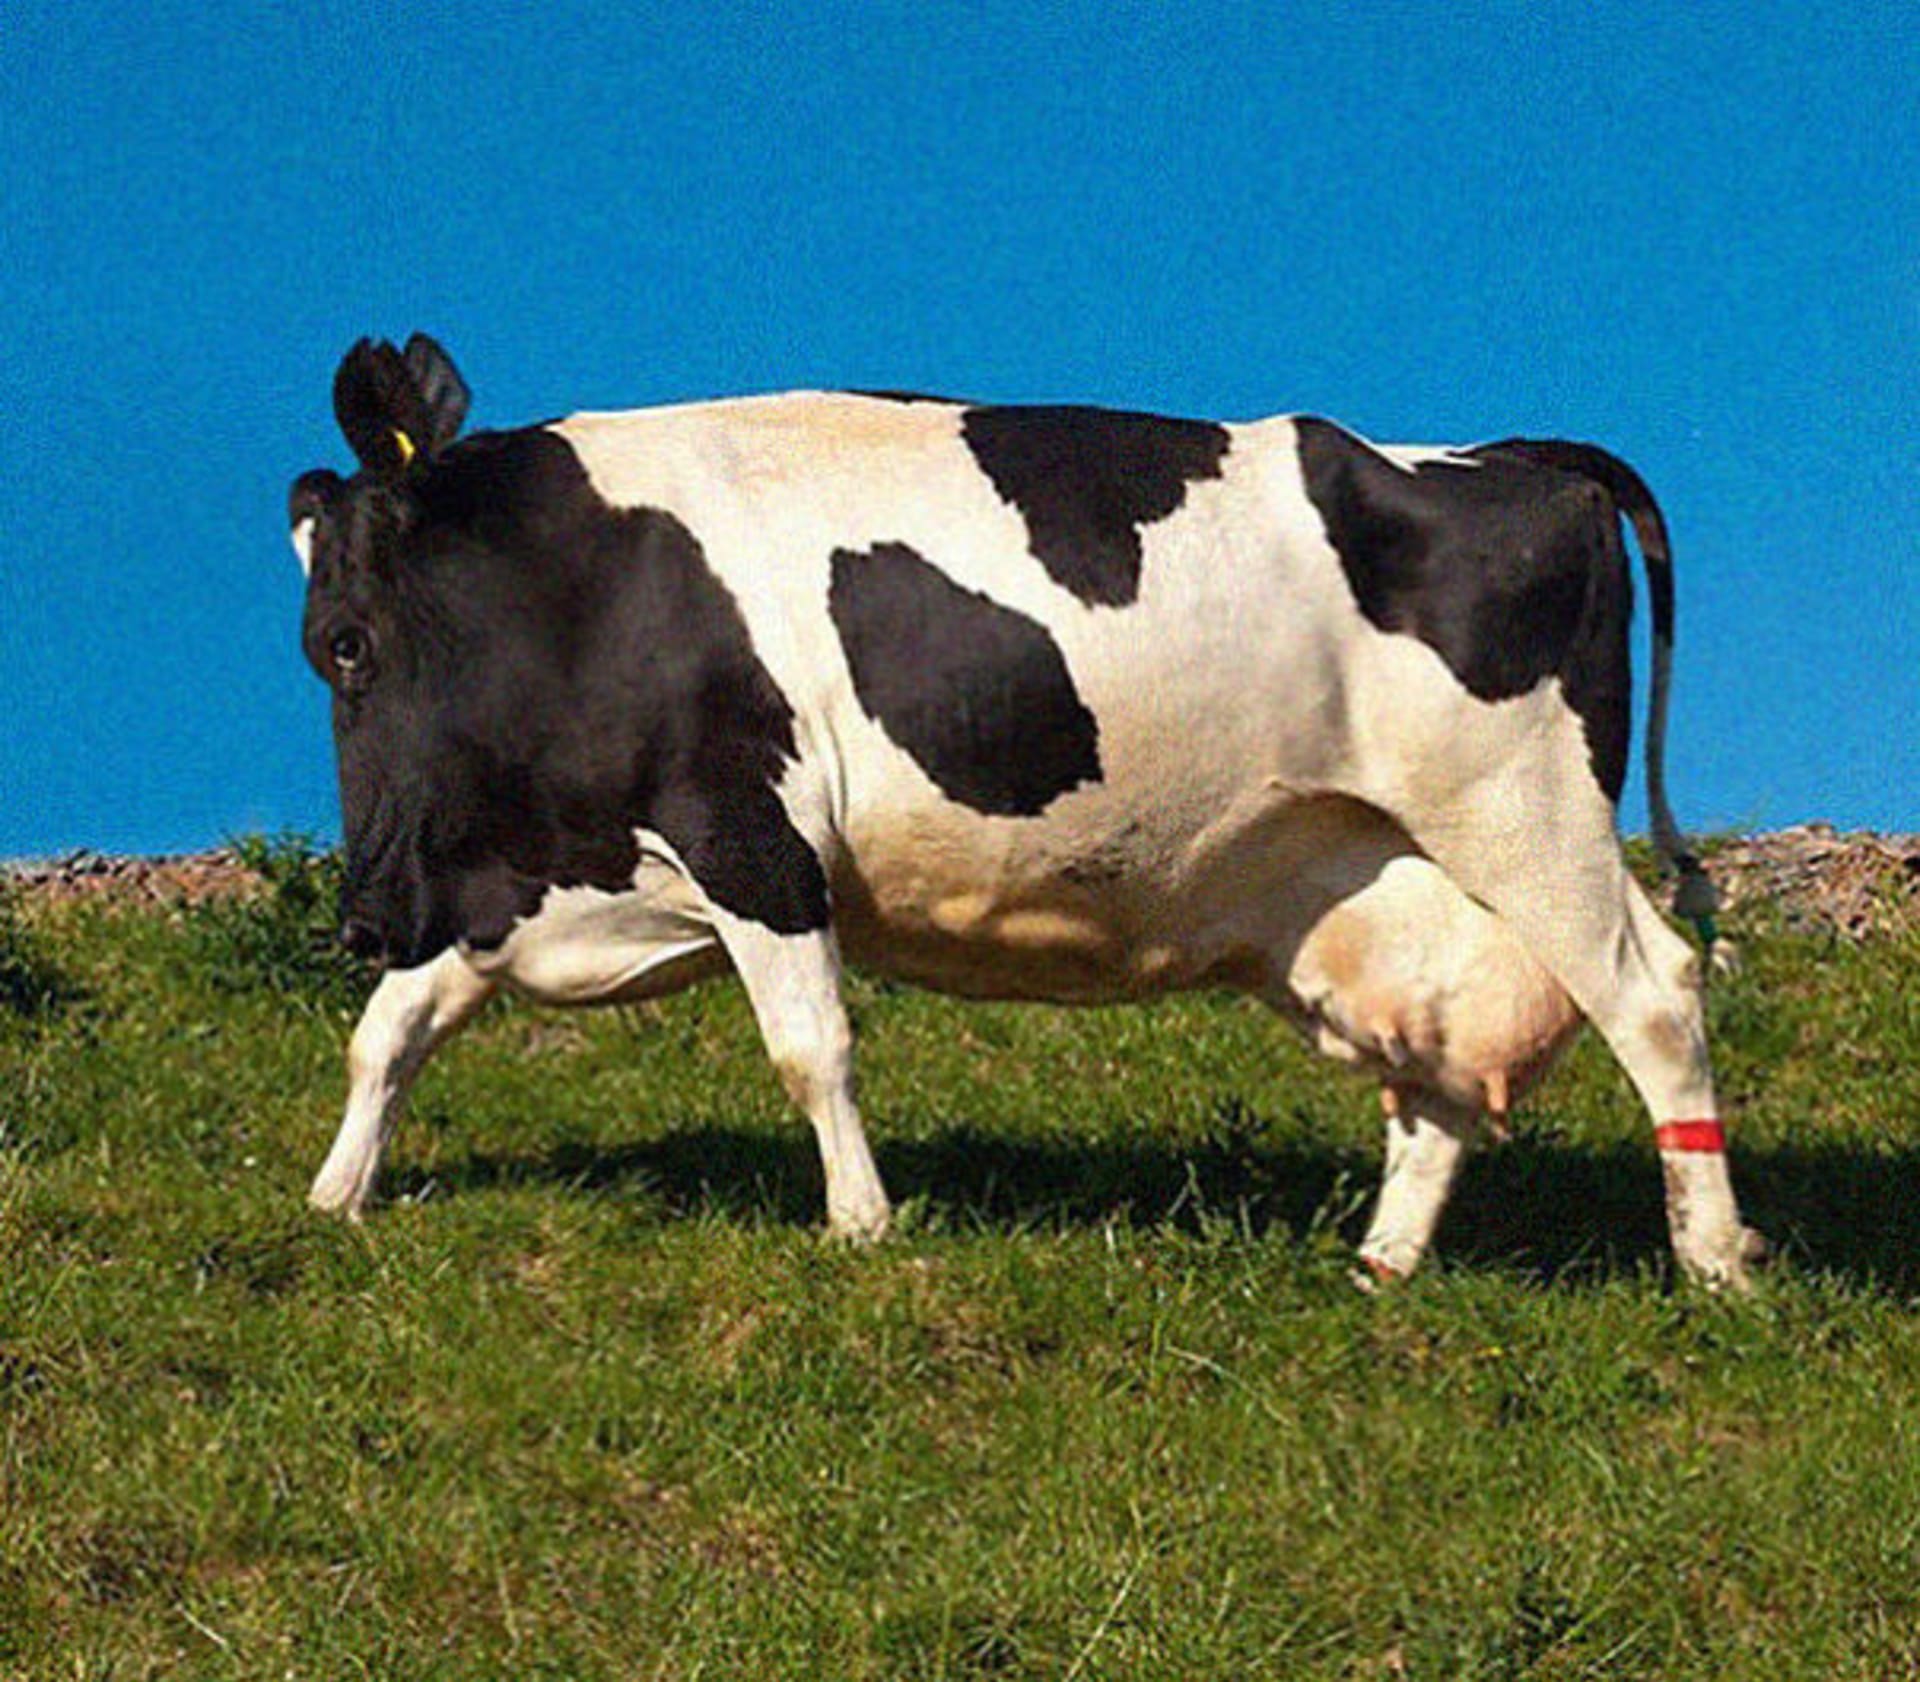 Nebýt plného vemínka, předek a zadek téhle krávy bez krku byste určovali jen velmi těžko